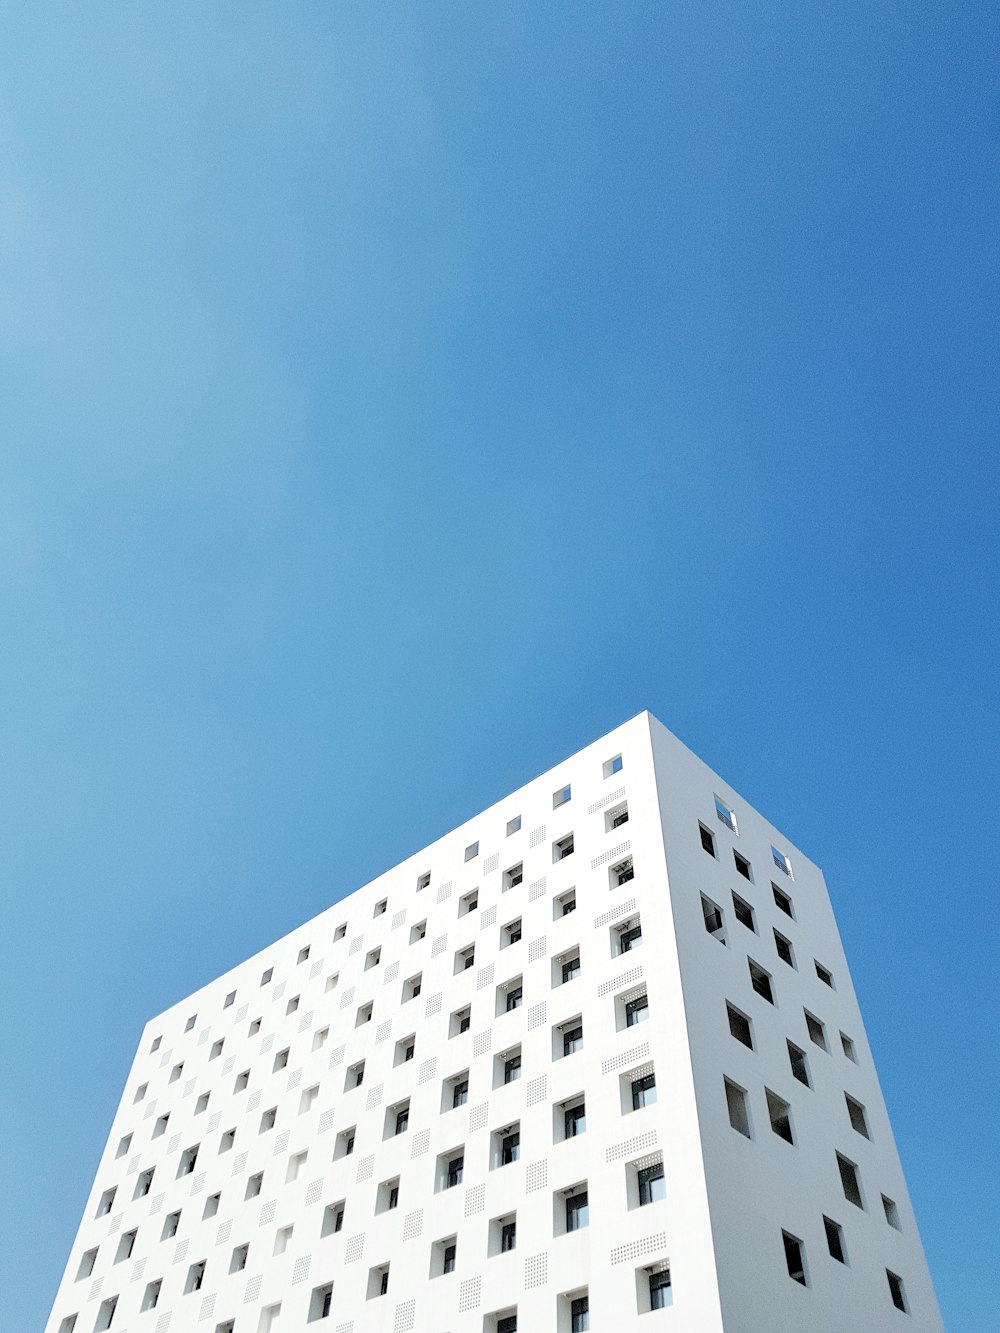 푸른 하늘 아래 하얗게 칠해진 건물